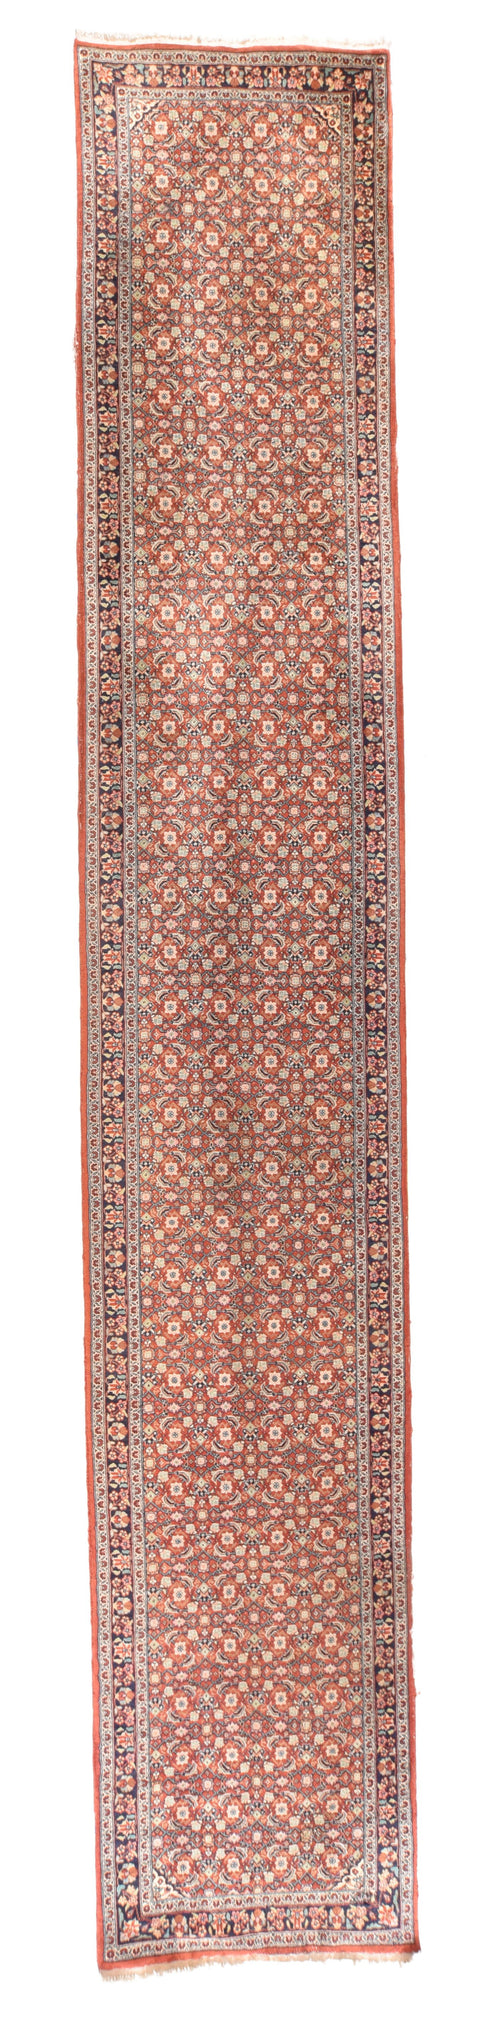 Antique Rust Fine Persian Tabrizs Area Rug